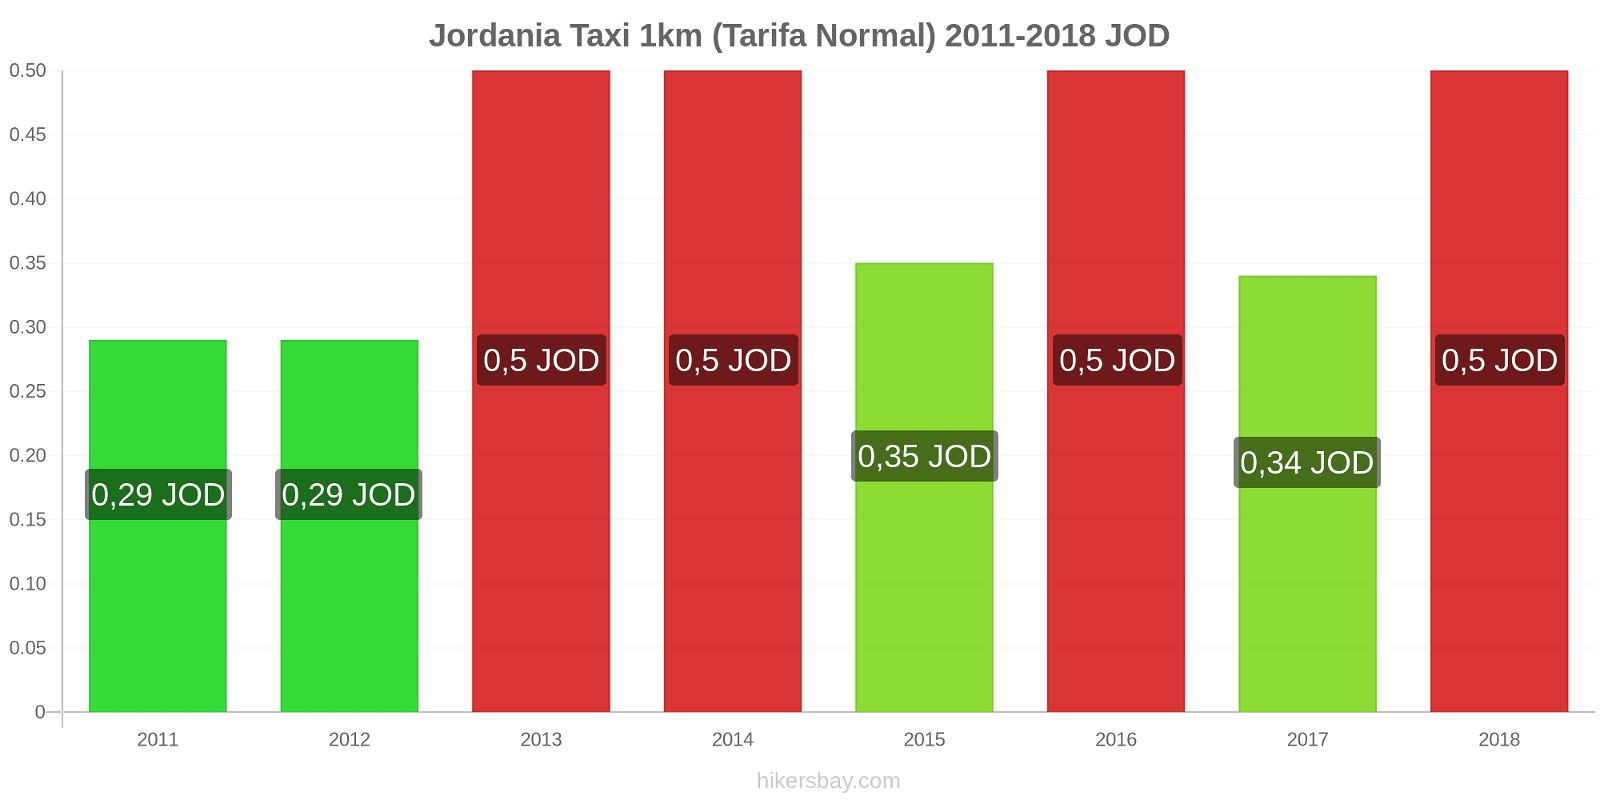 Jordania cambios de precios Taxi 1km (tarifa normal) hikersbay.com